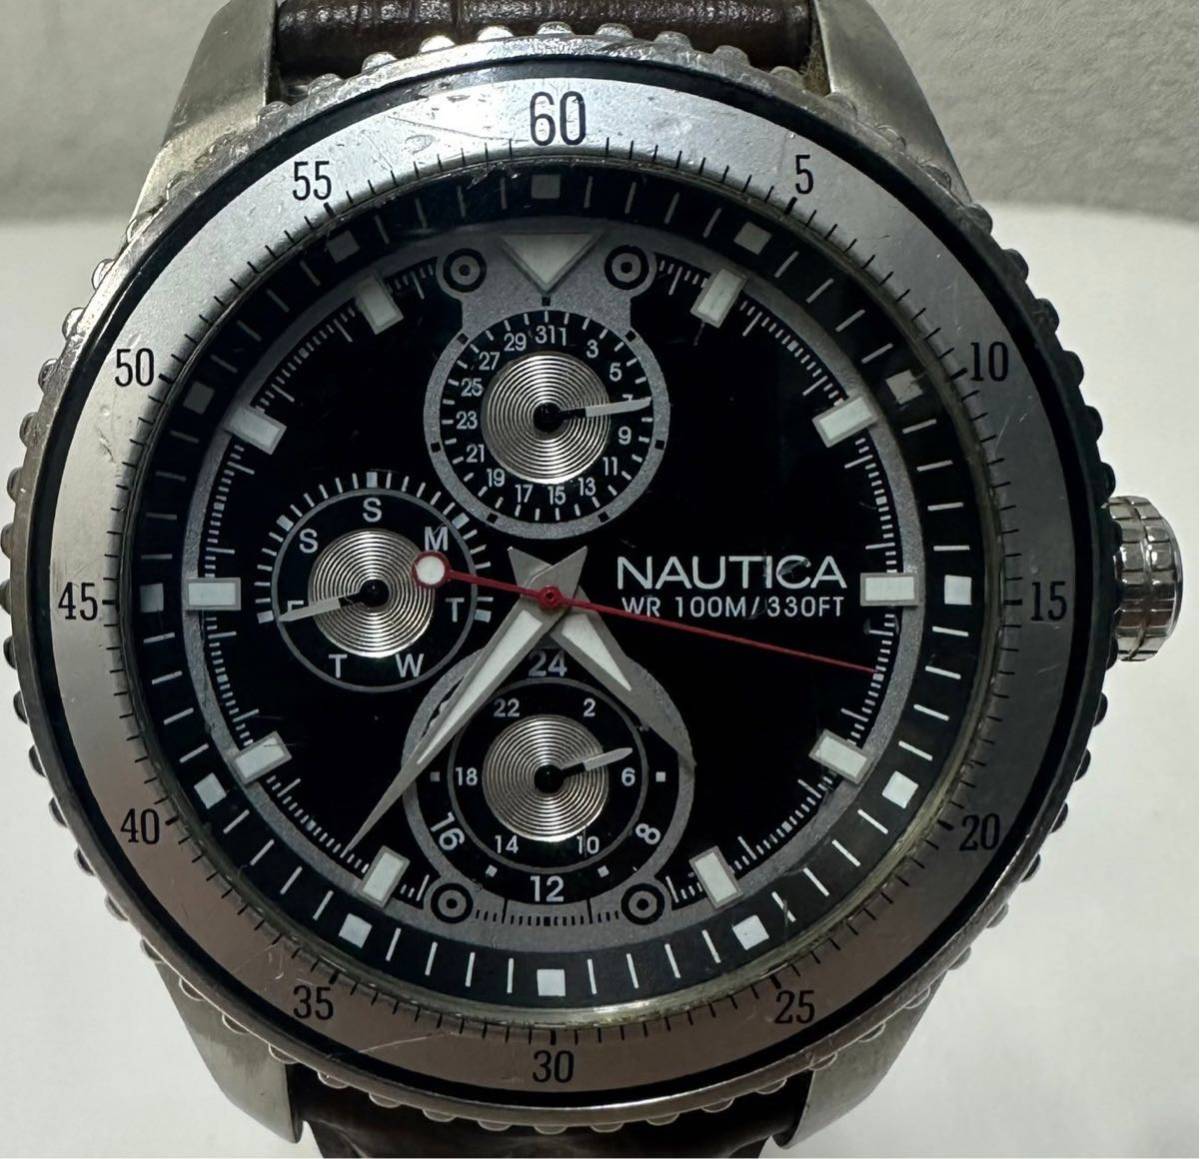 NAUTICA ノーティカ A14581G WR 100M/330FT クロノグラフ QZ デイト 腕時計 ブラック文字盤 _画像2